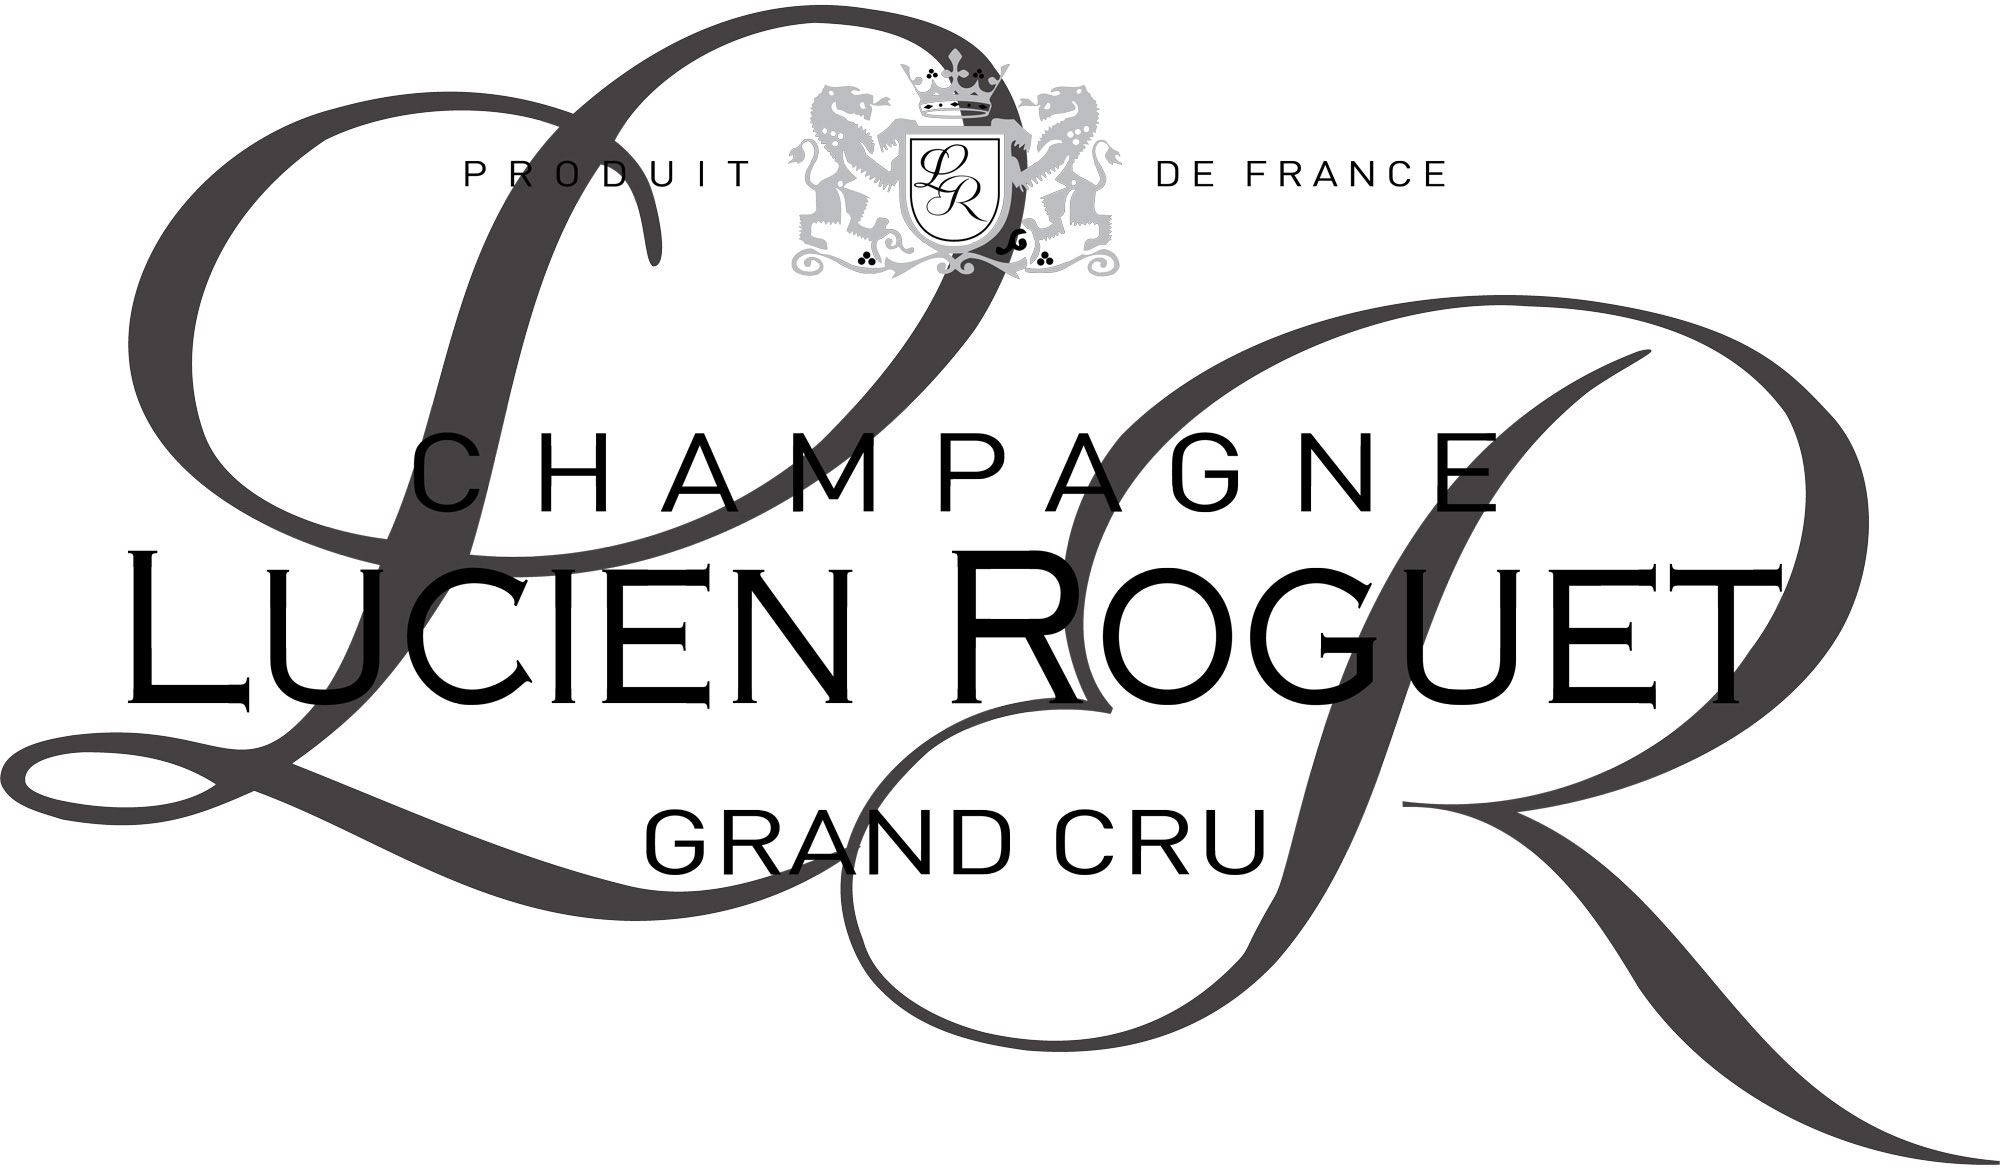 Champagne Lucien Roguet Grand Cru